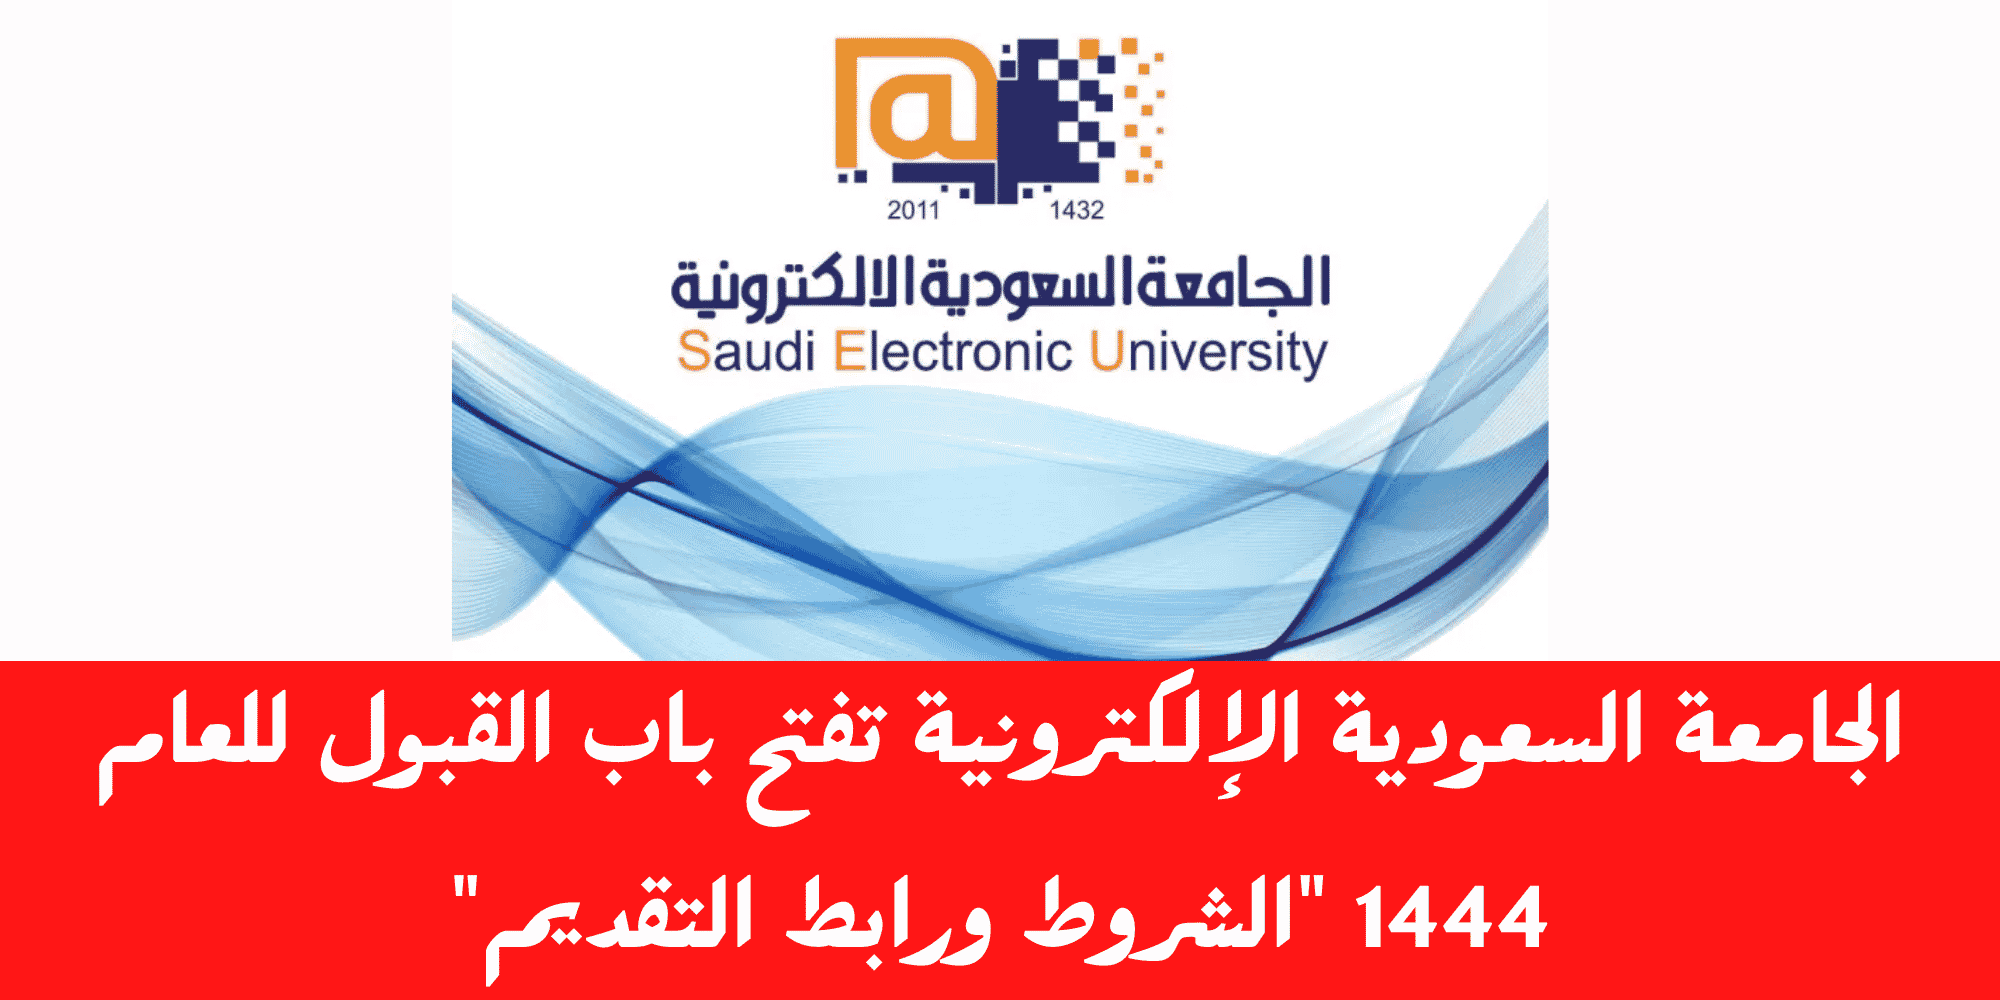 صورة الجامعة السعودية الالكترونية تسجيل الدخول الموحد 1444